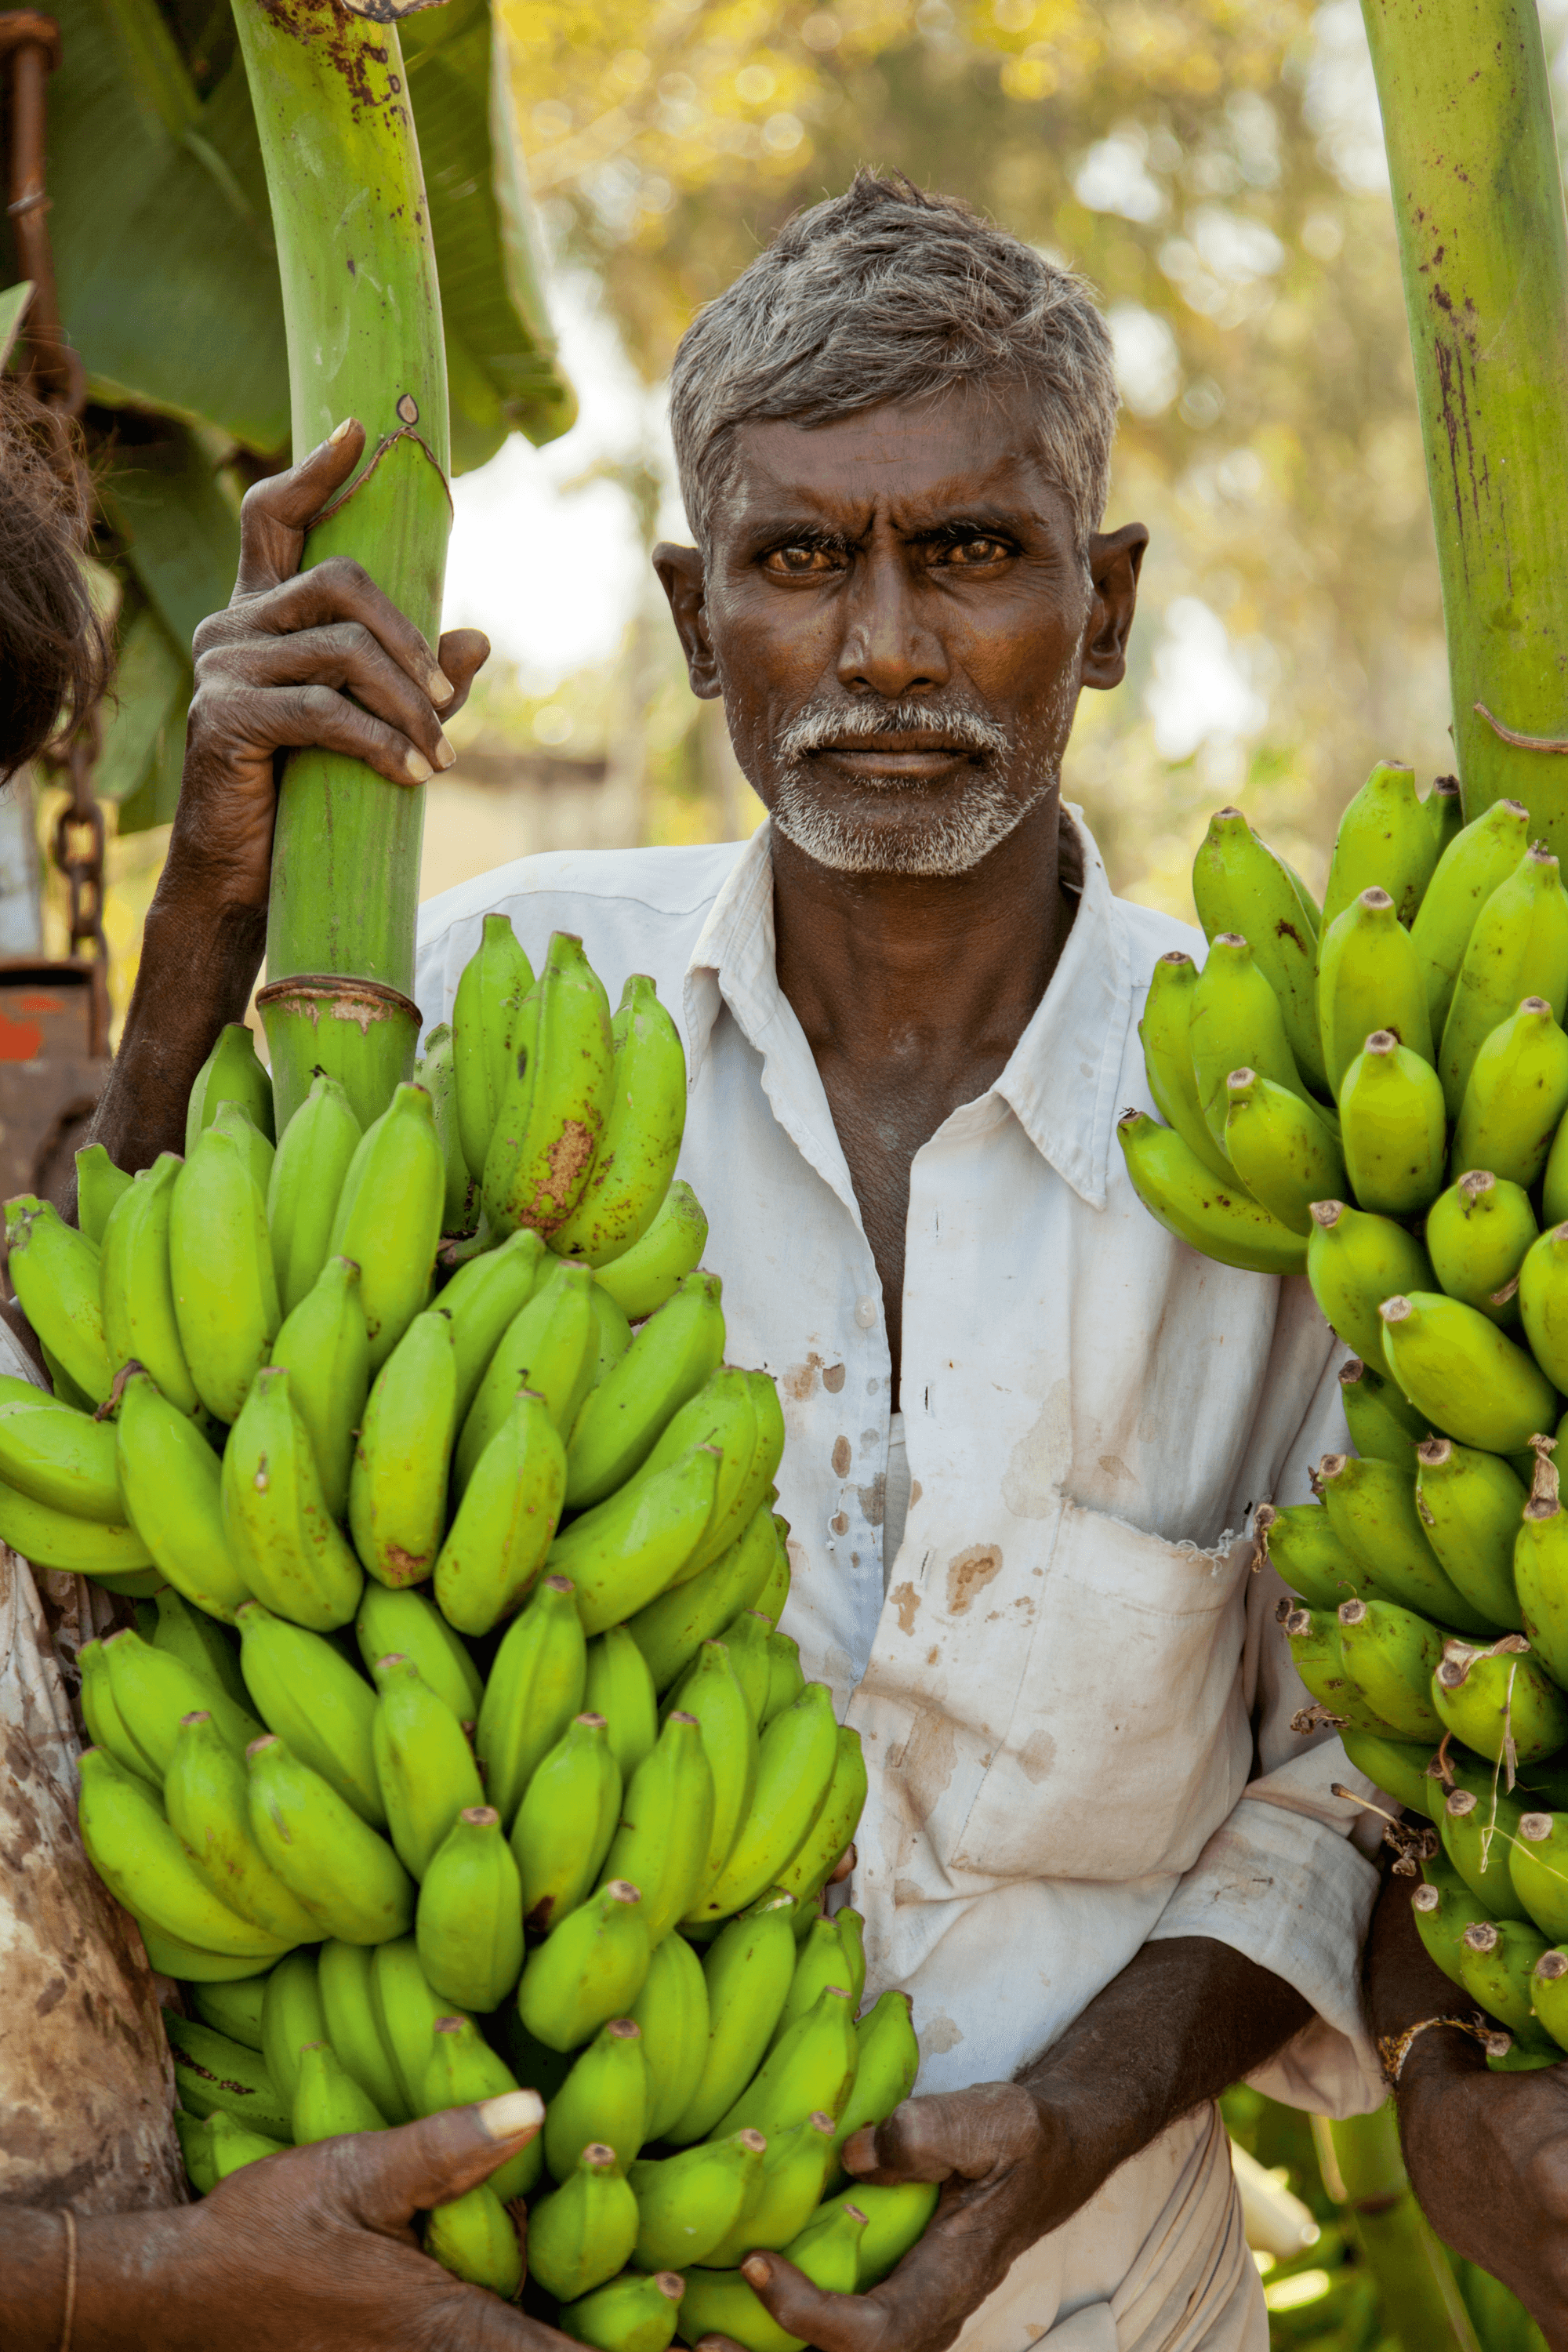 At the banana harvest, Karnataka #3/8